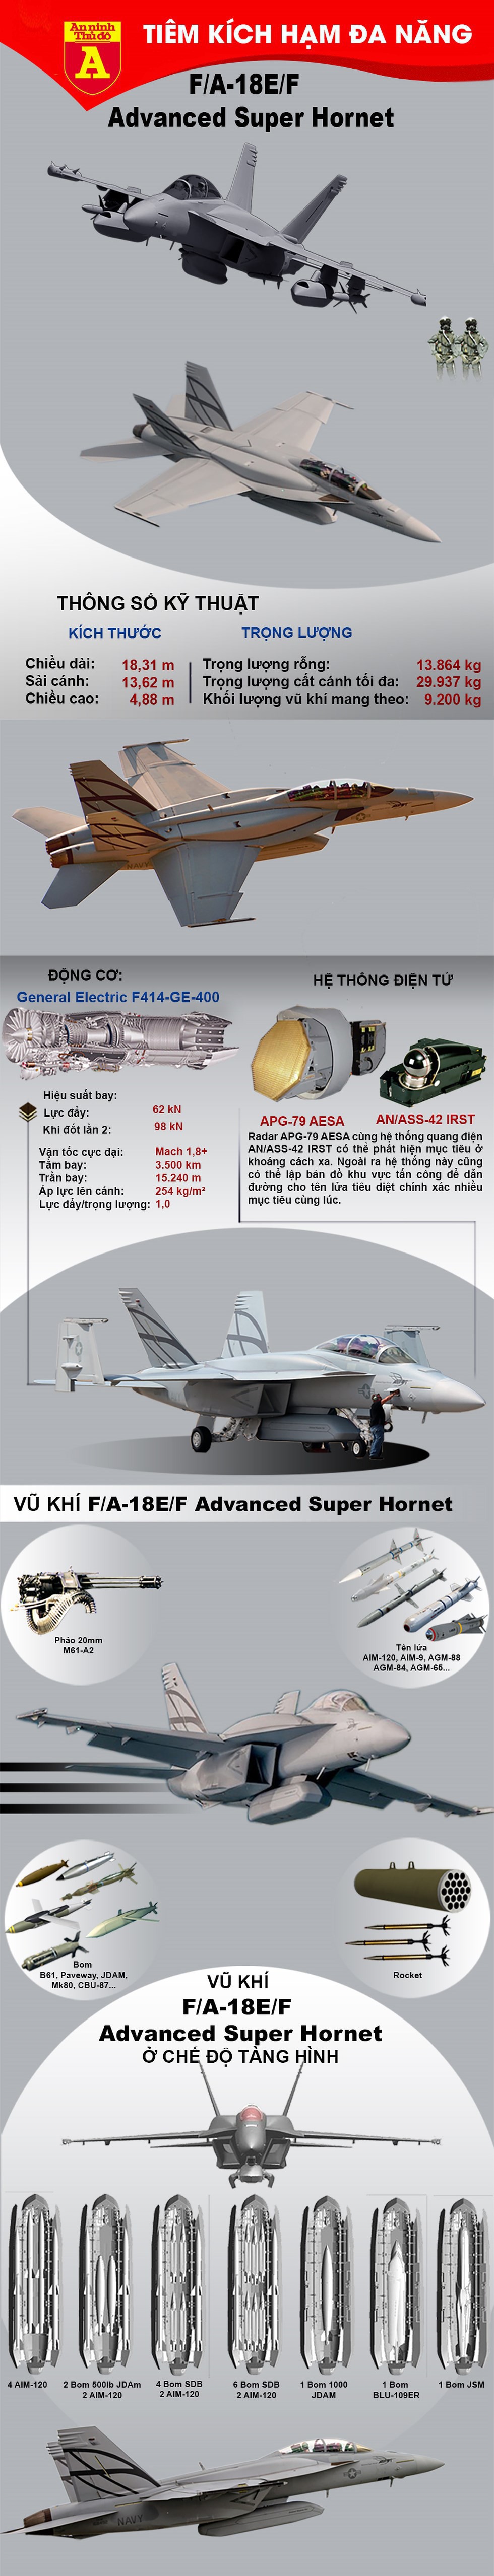 [Infographics] Đức gạt bỏ F-15, F-35 để lựa chọn F/A-18E/F Advanced Super Hornet - Ảnh 1